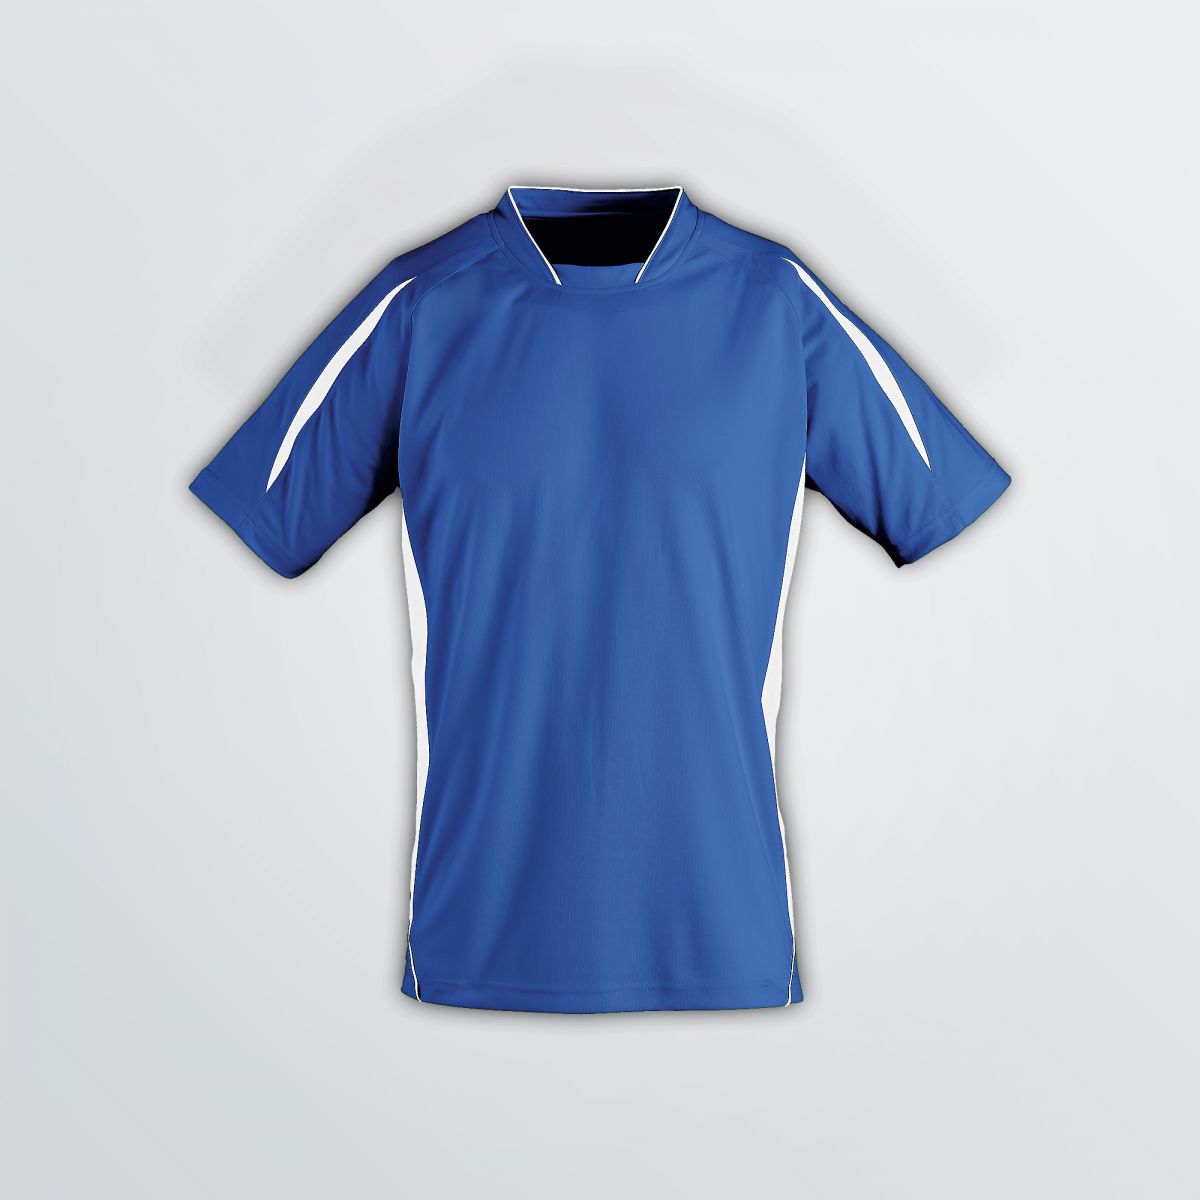 blue football shirt